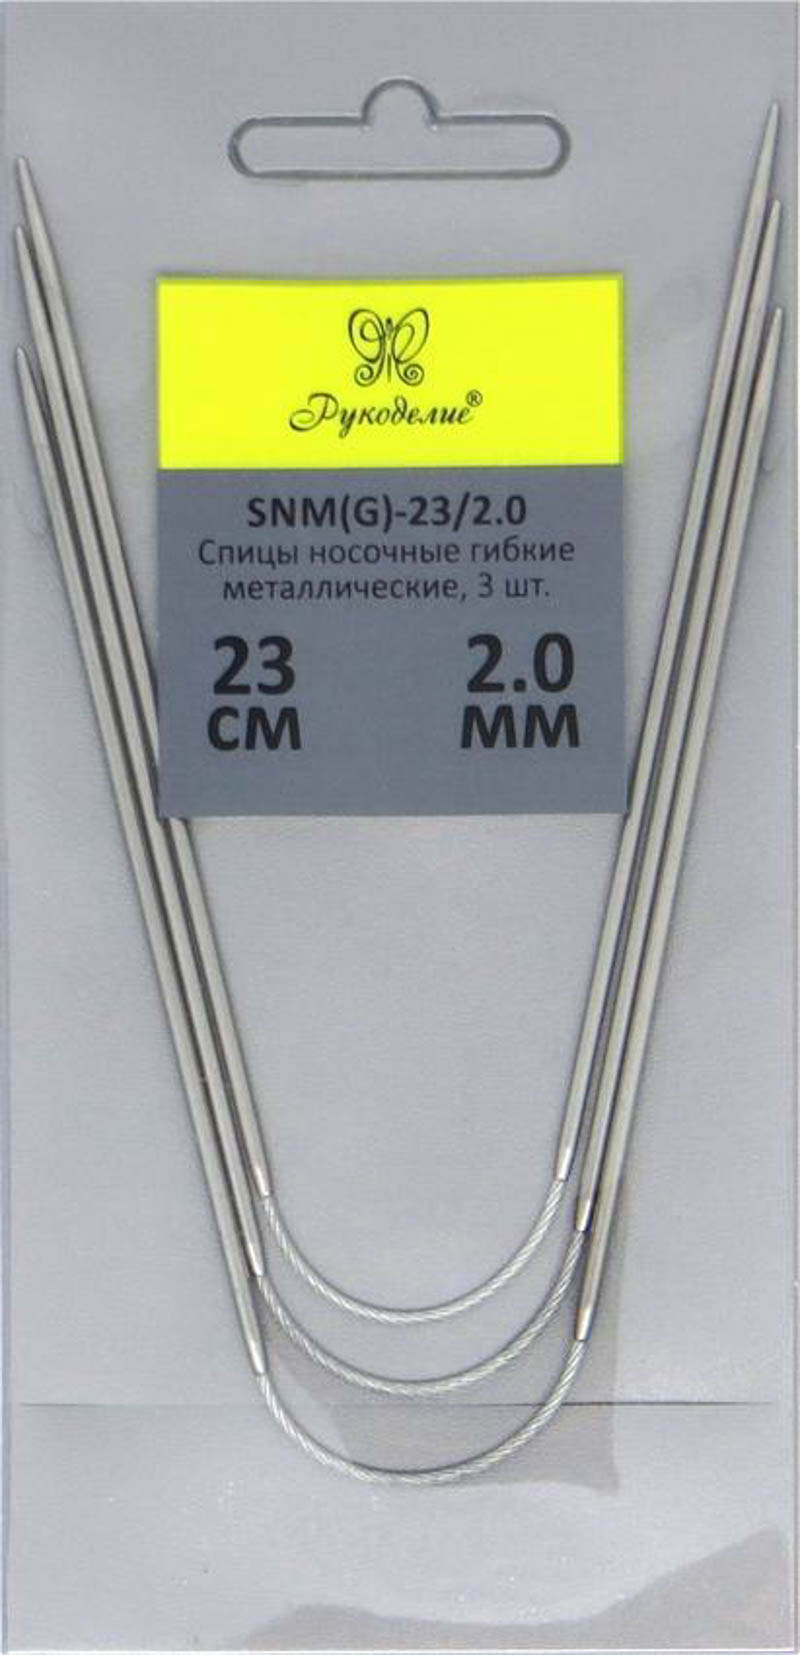 Спицы "Рукоделие" SNM(G)-23/2.0 носочные гибкие металл 2,0мм, 23см (3шт.) на металлическом тросике